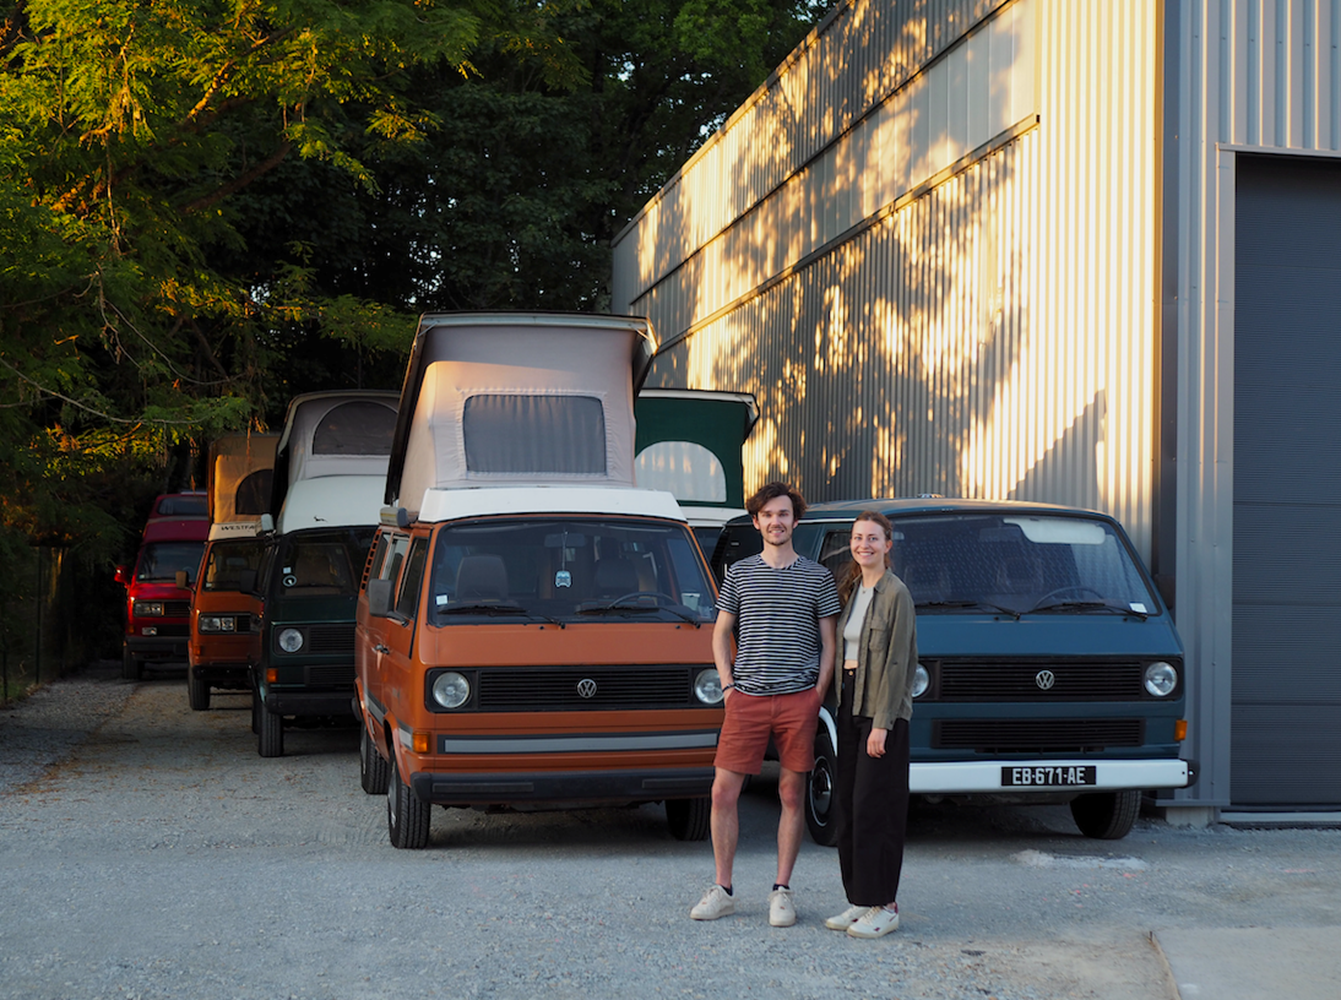 Location de combis Volkswagen vintages modernisés & tout confort. ©